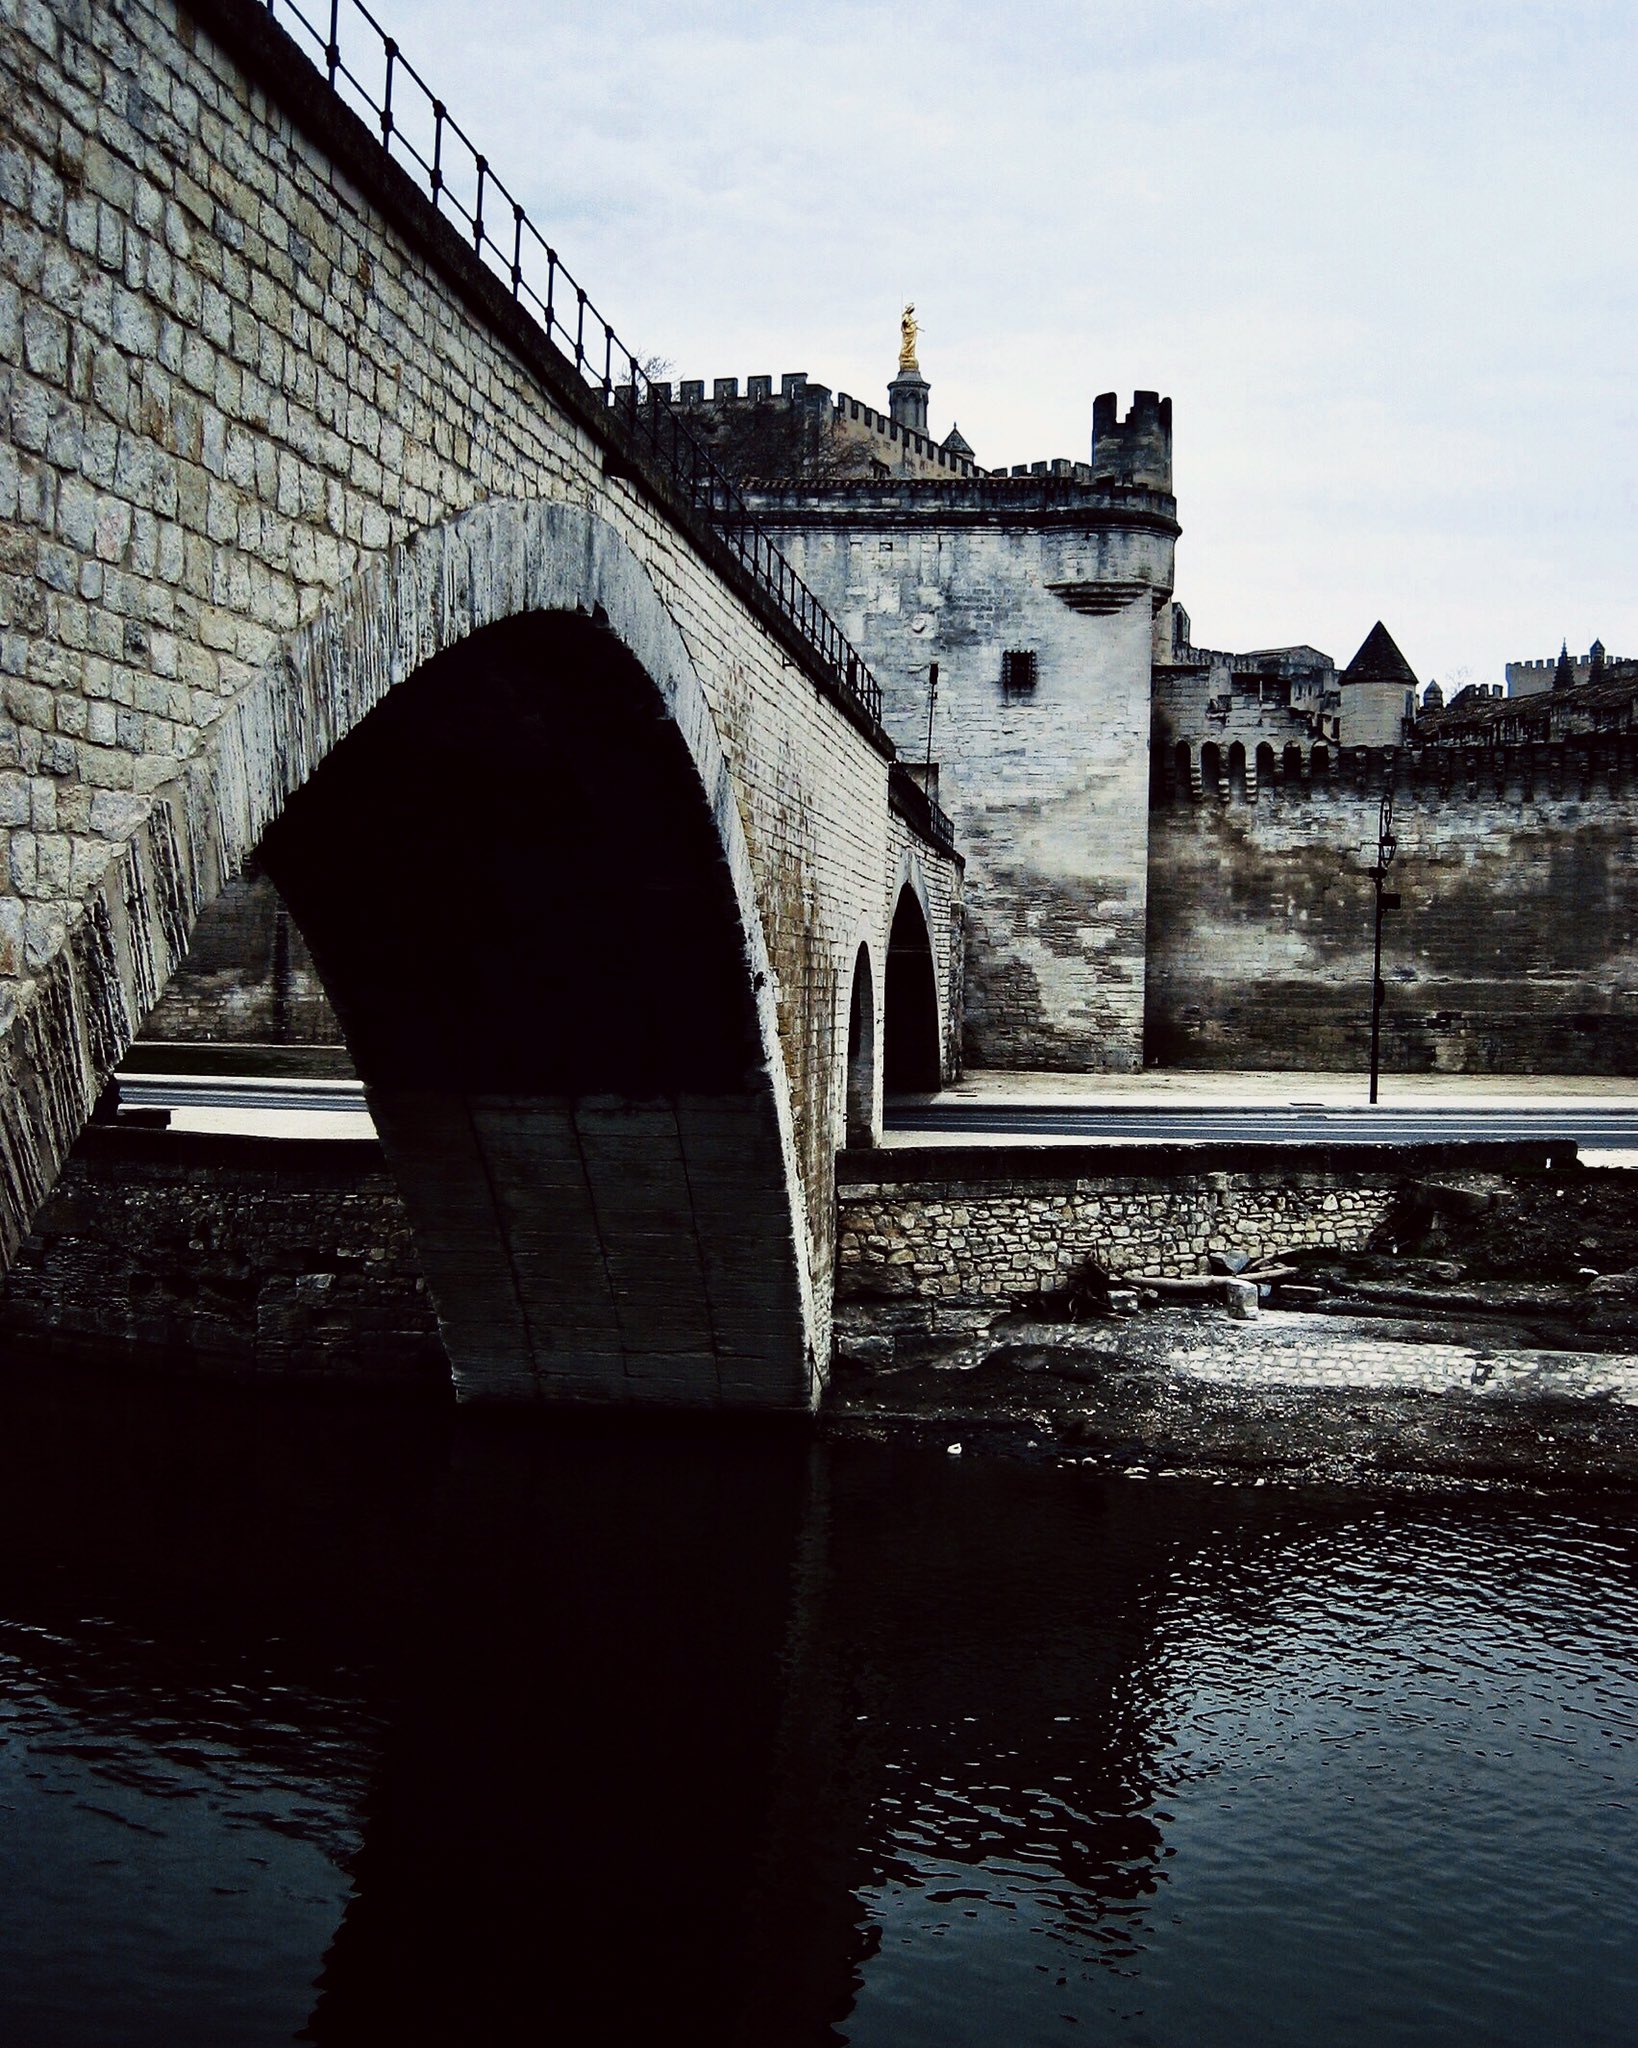 Ain T No Sunshine 半分残った橋なんて水運のジャマになると思うけど1000年も保存するフランス人トレビアン アヴィニョン法王庁 サンベネゼ橋 世界遺産 南仏 アヴィニョン 土木 落橋 ローヌ川 石橋 教皇宮殿 Worldheritage Avignon T